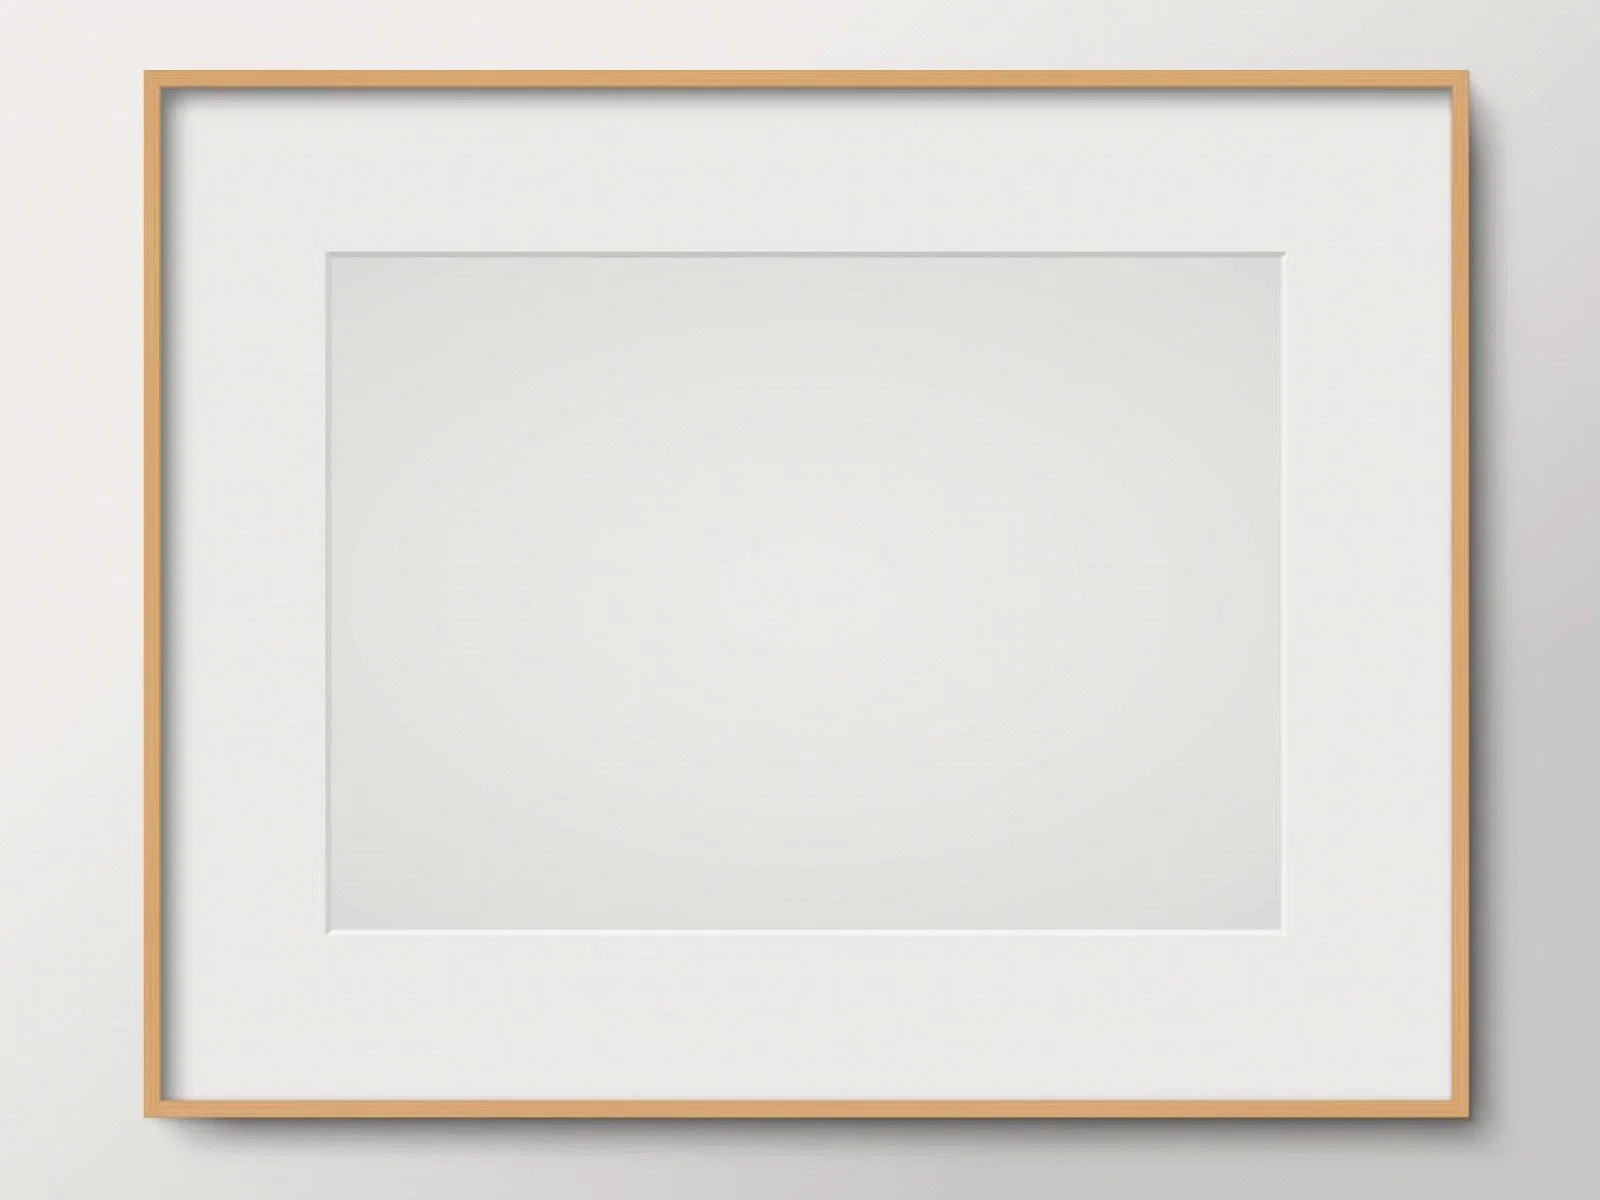 إطار صور خشبي من الألومنيوم للطراز PS إطار صور باللون الأسود الأبيض الأزرق اللوحة ذات المرآة الذهبية الأوروبية